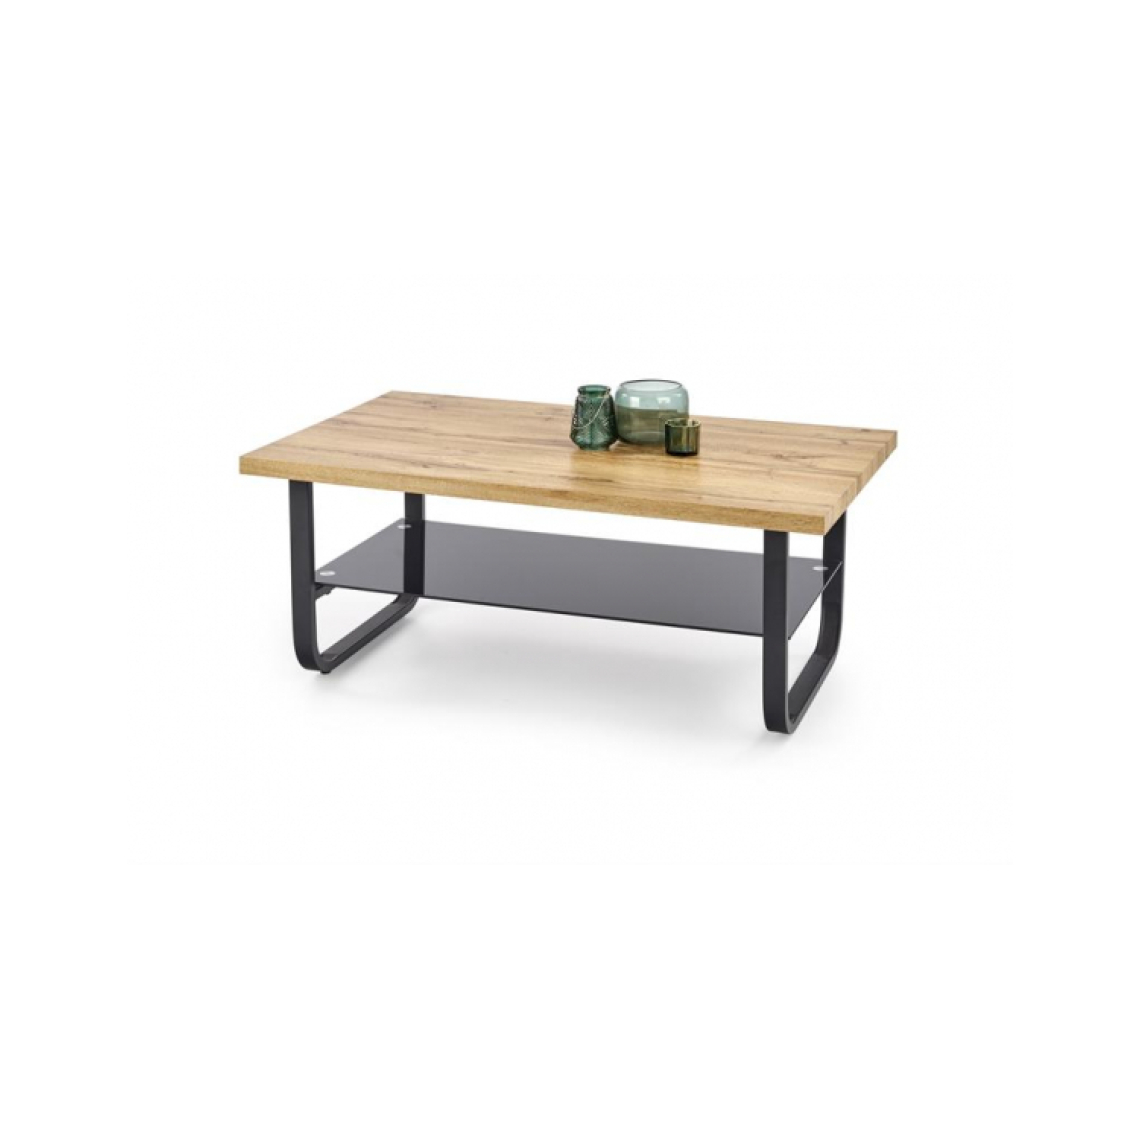 Carellia - Table basse rectangulaire 120 cm x 60 cm x 45 cm - Chêne naturel/Noir - Tables basses